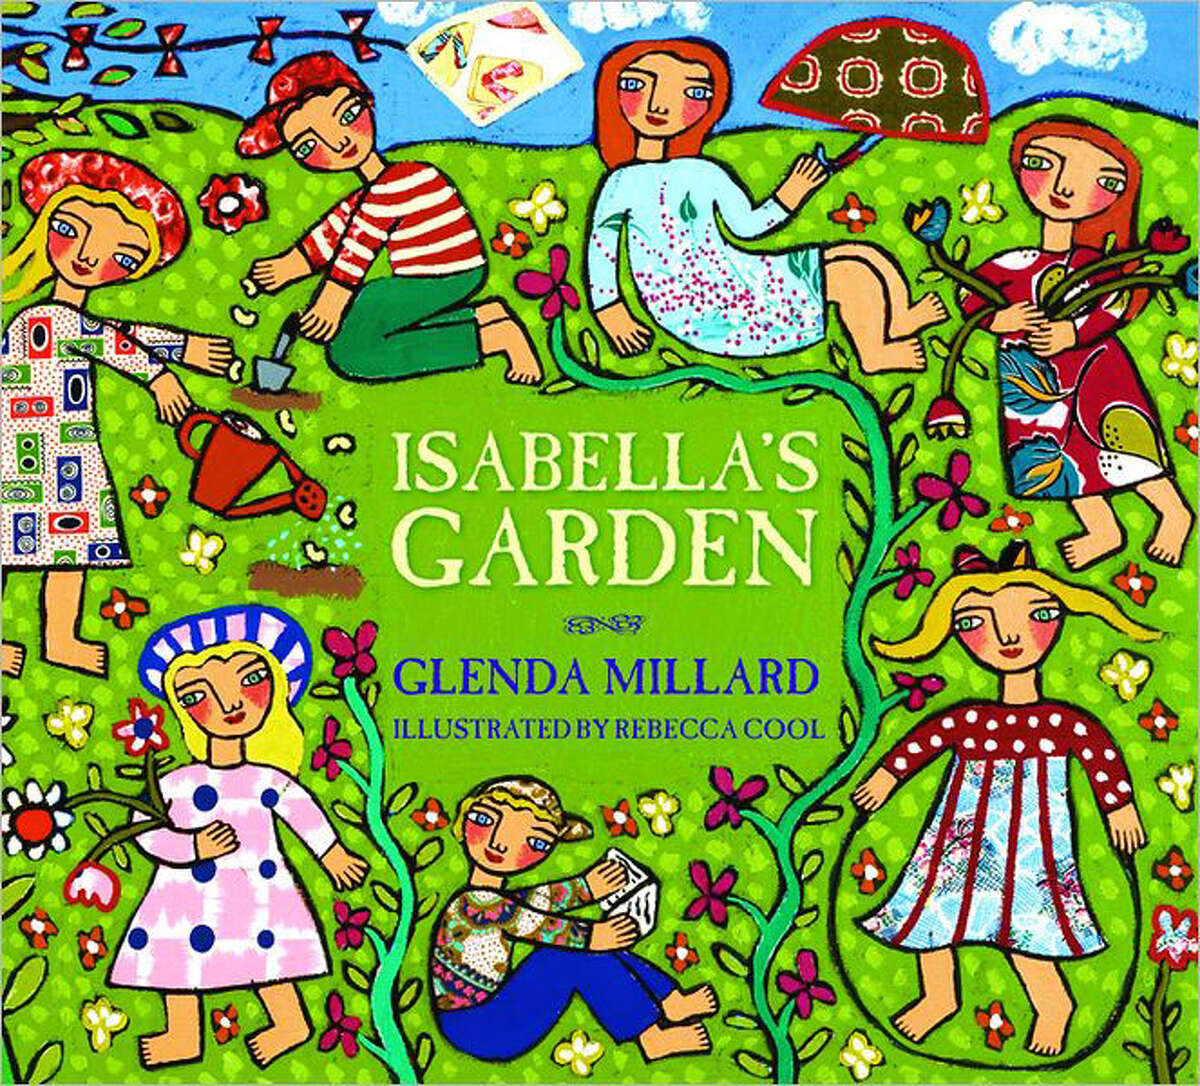 "Isabella's Garden" by Glenda Millard